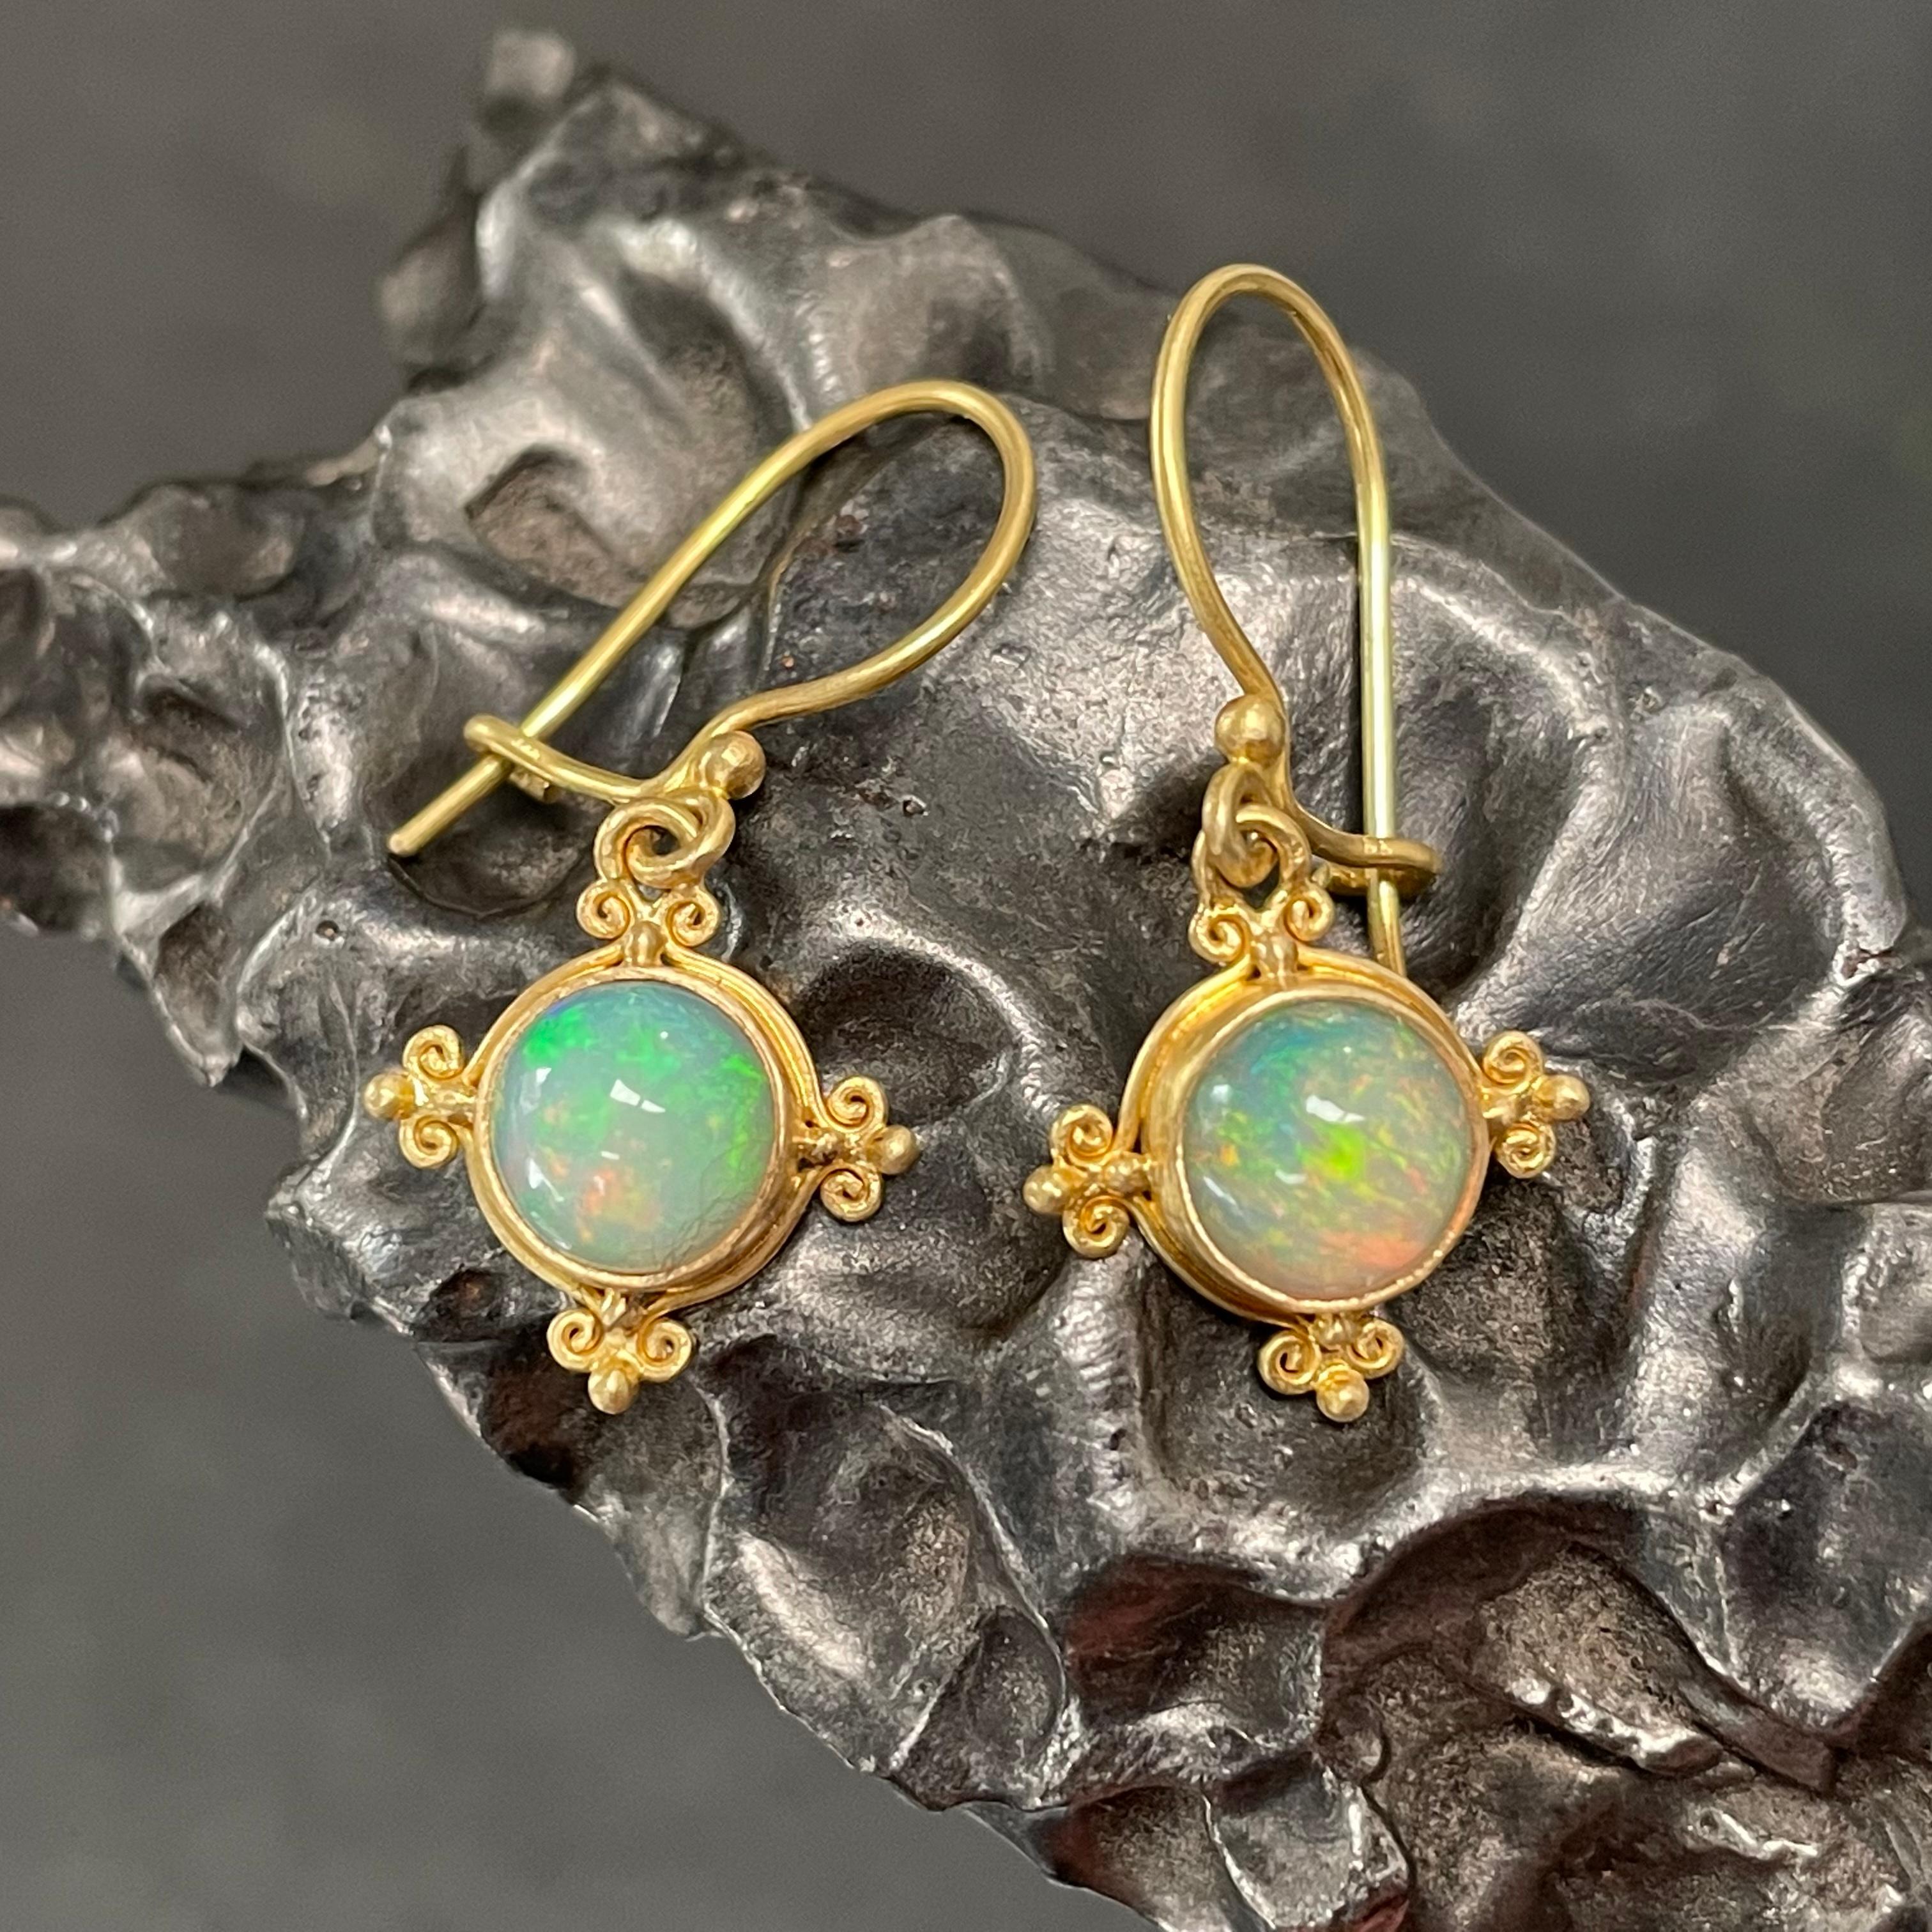 Deux cabochons ronds de 7 mm d'opale éthiopienne de la mine Welo, joliment assortis, sont sertis dans une délicate monture en or 18 carats de type 